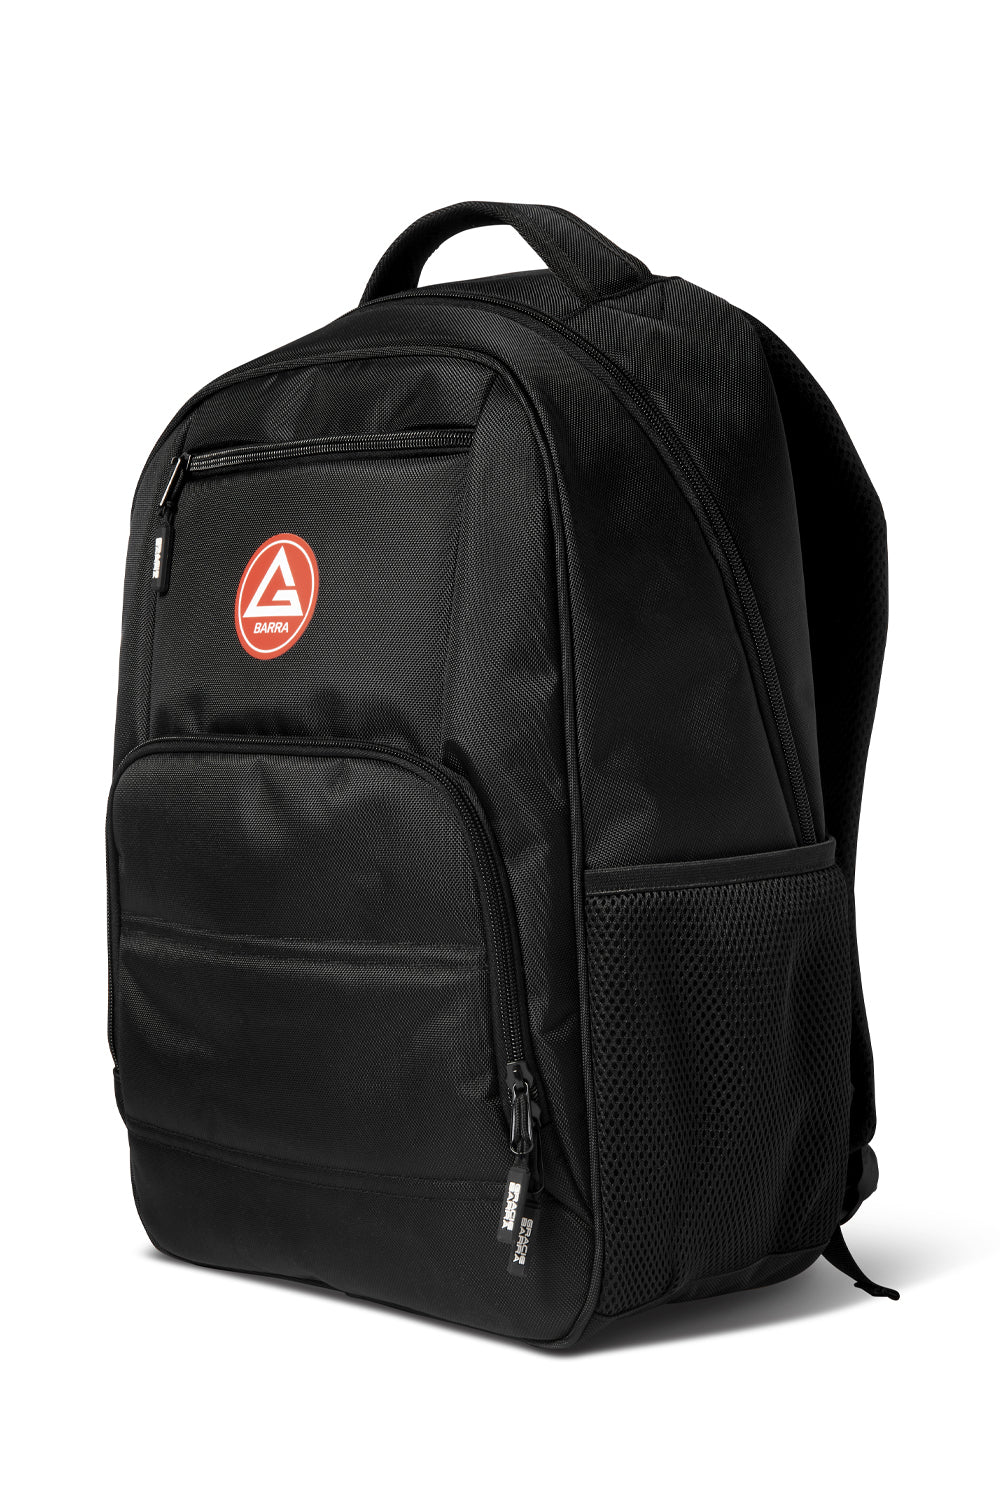 RS Laptop Backpack - Black